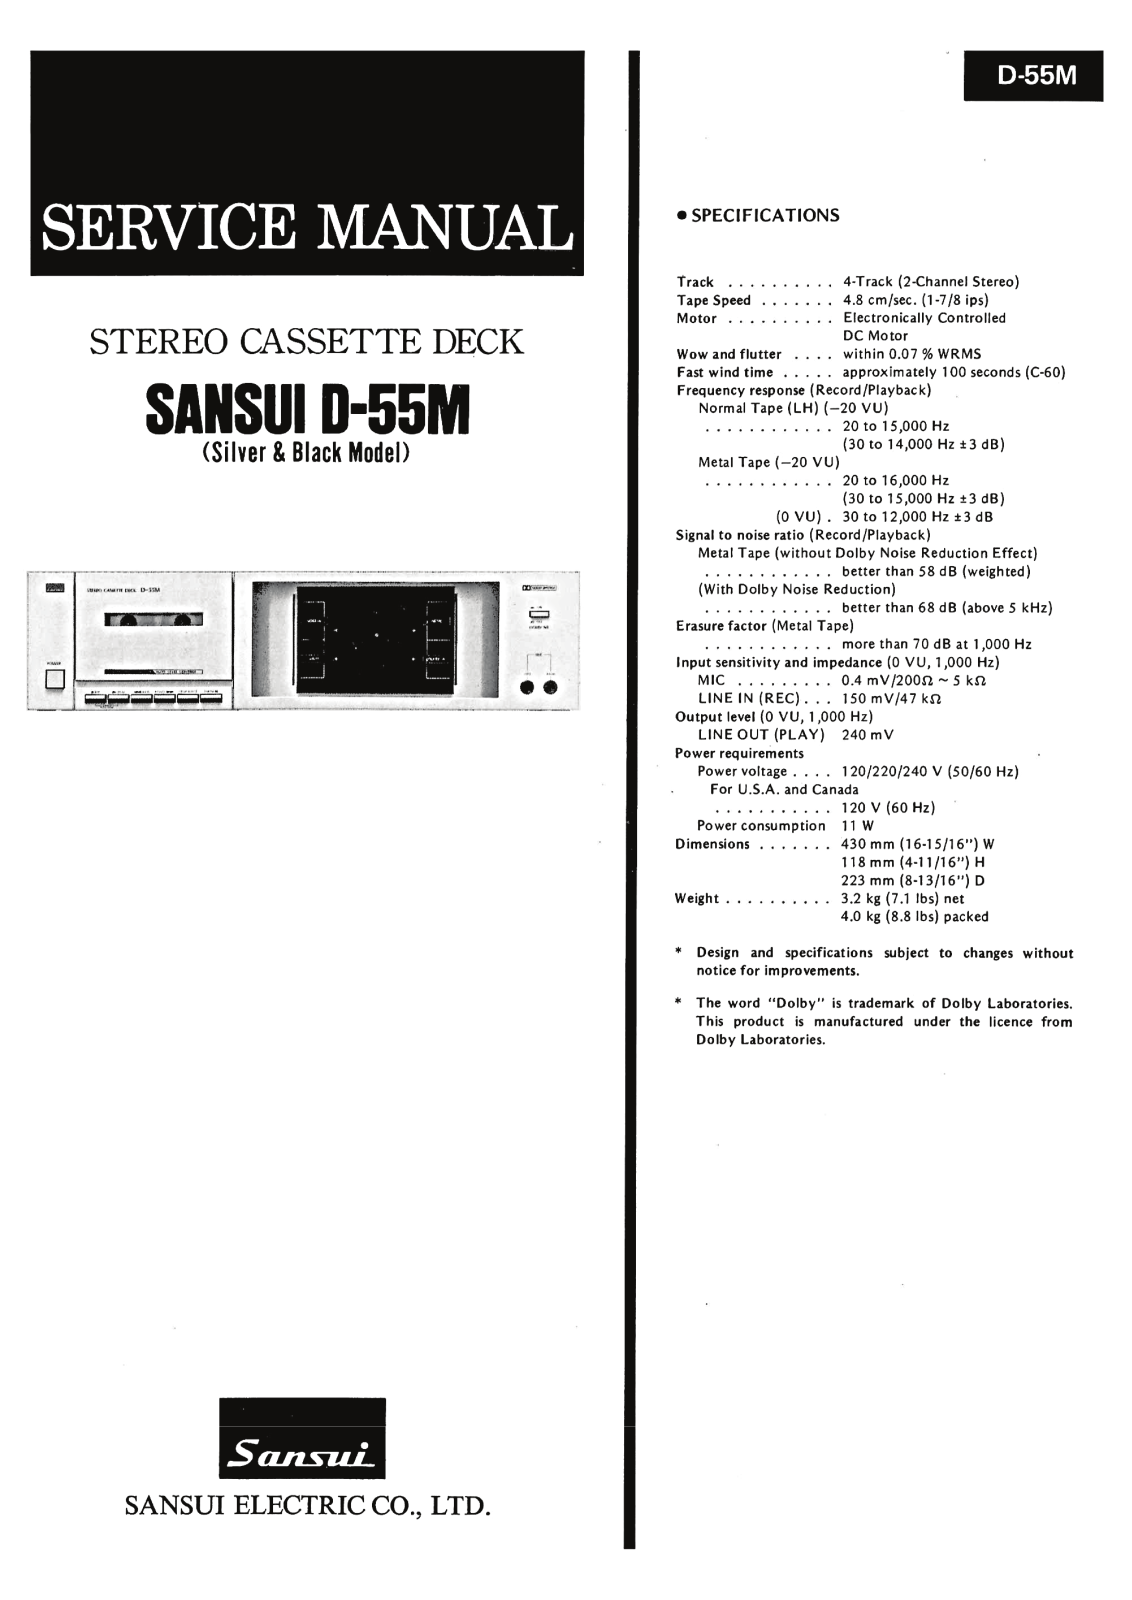 Sansui D-55-M Service Manual